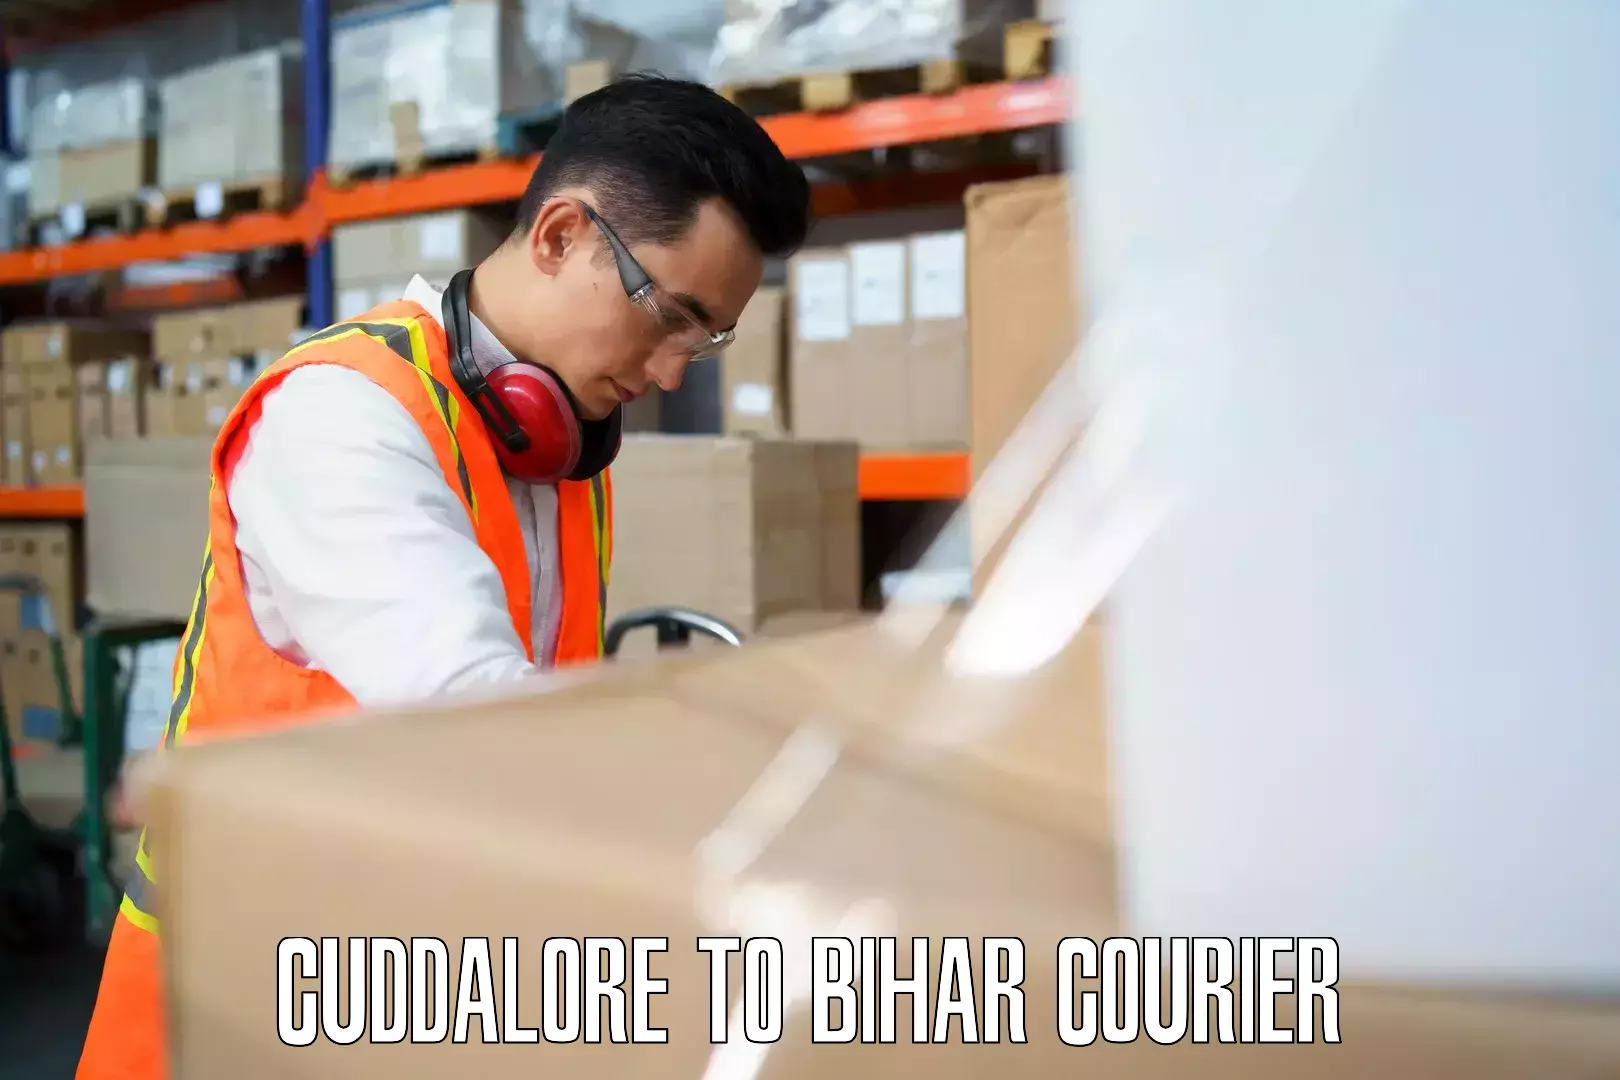 Baggage delivery solutions Cuddalore to Bihar